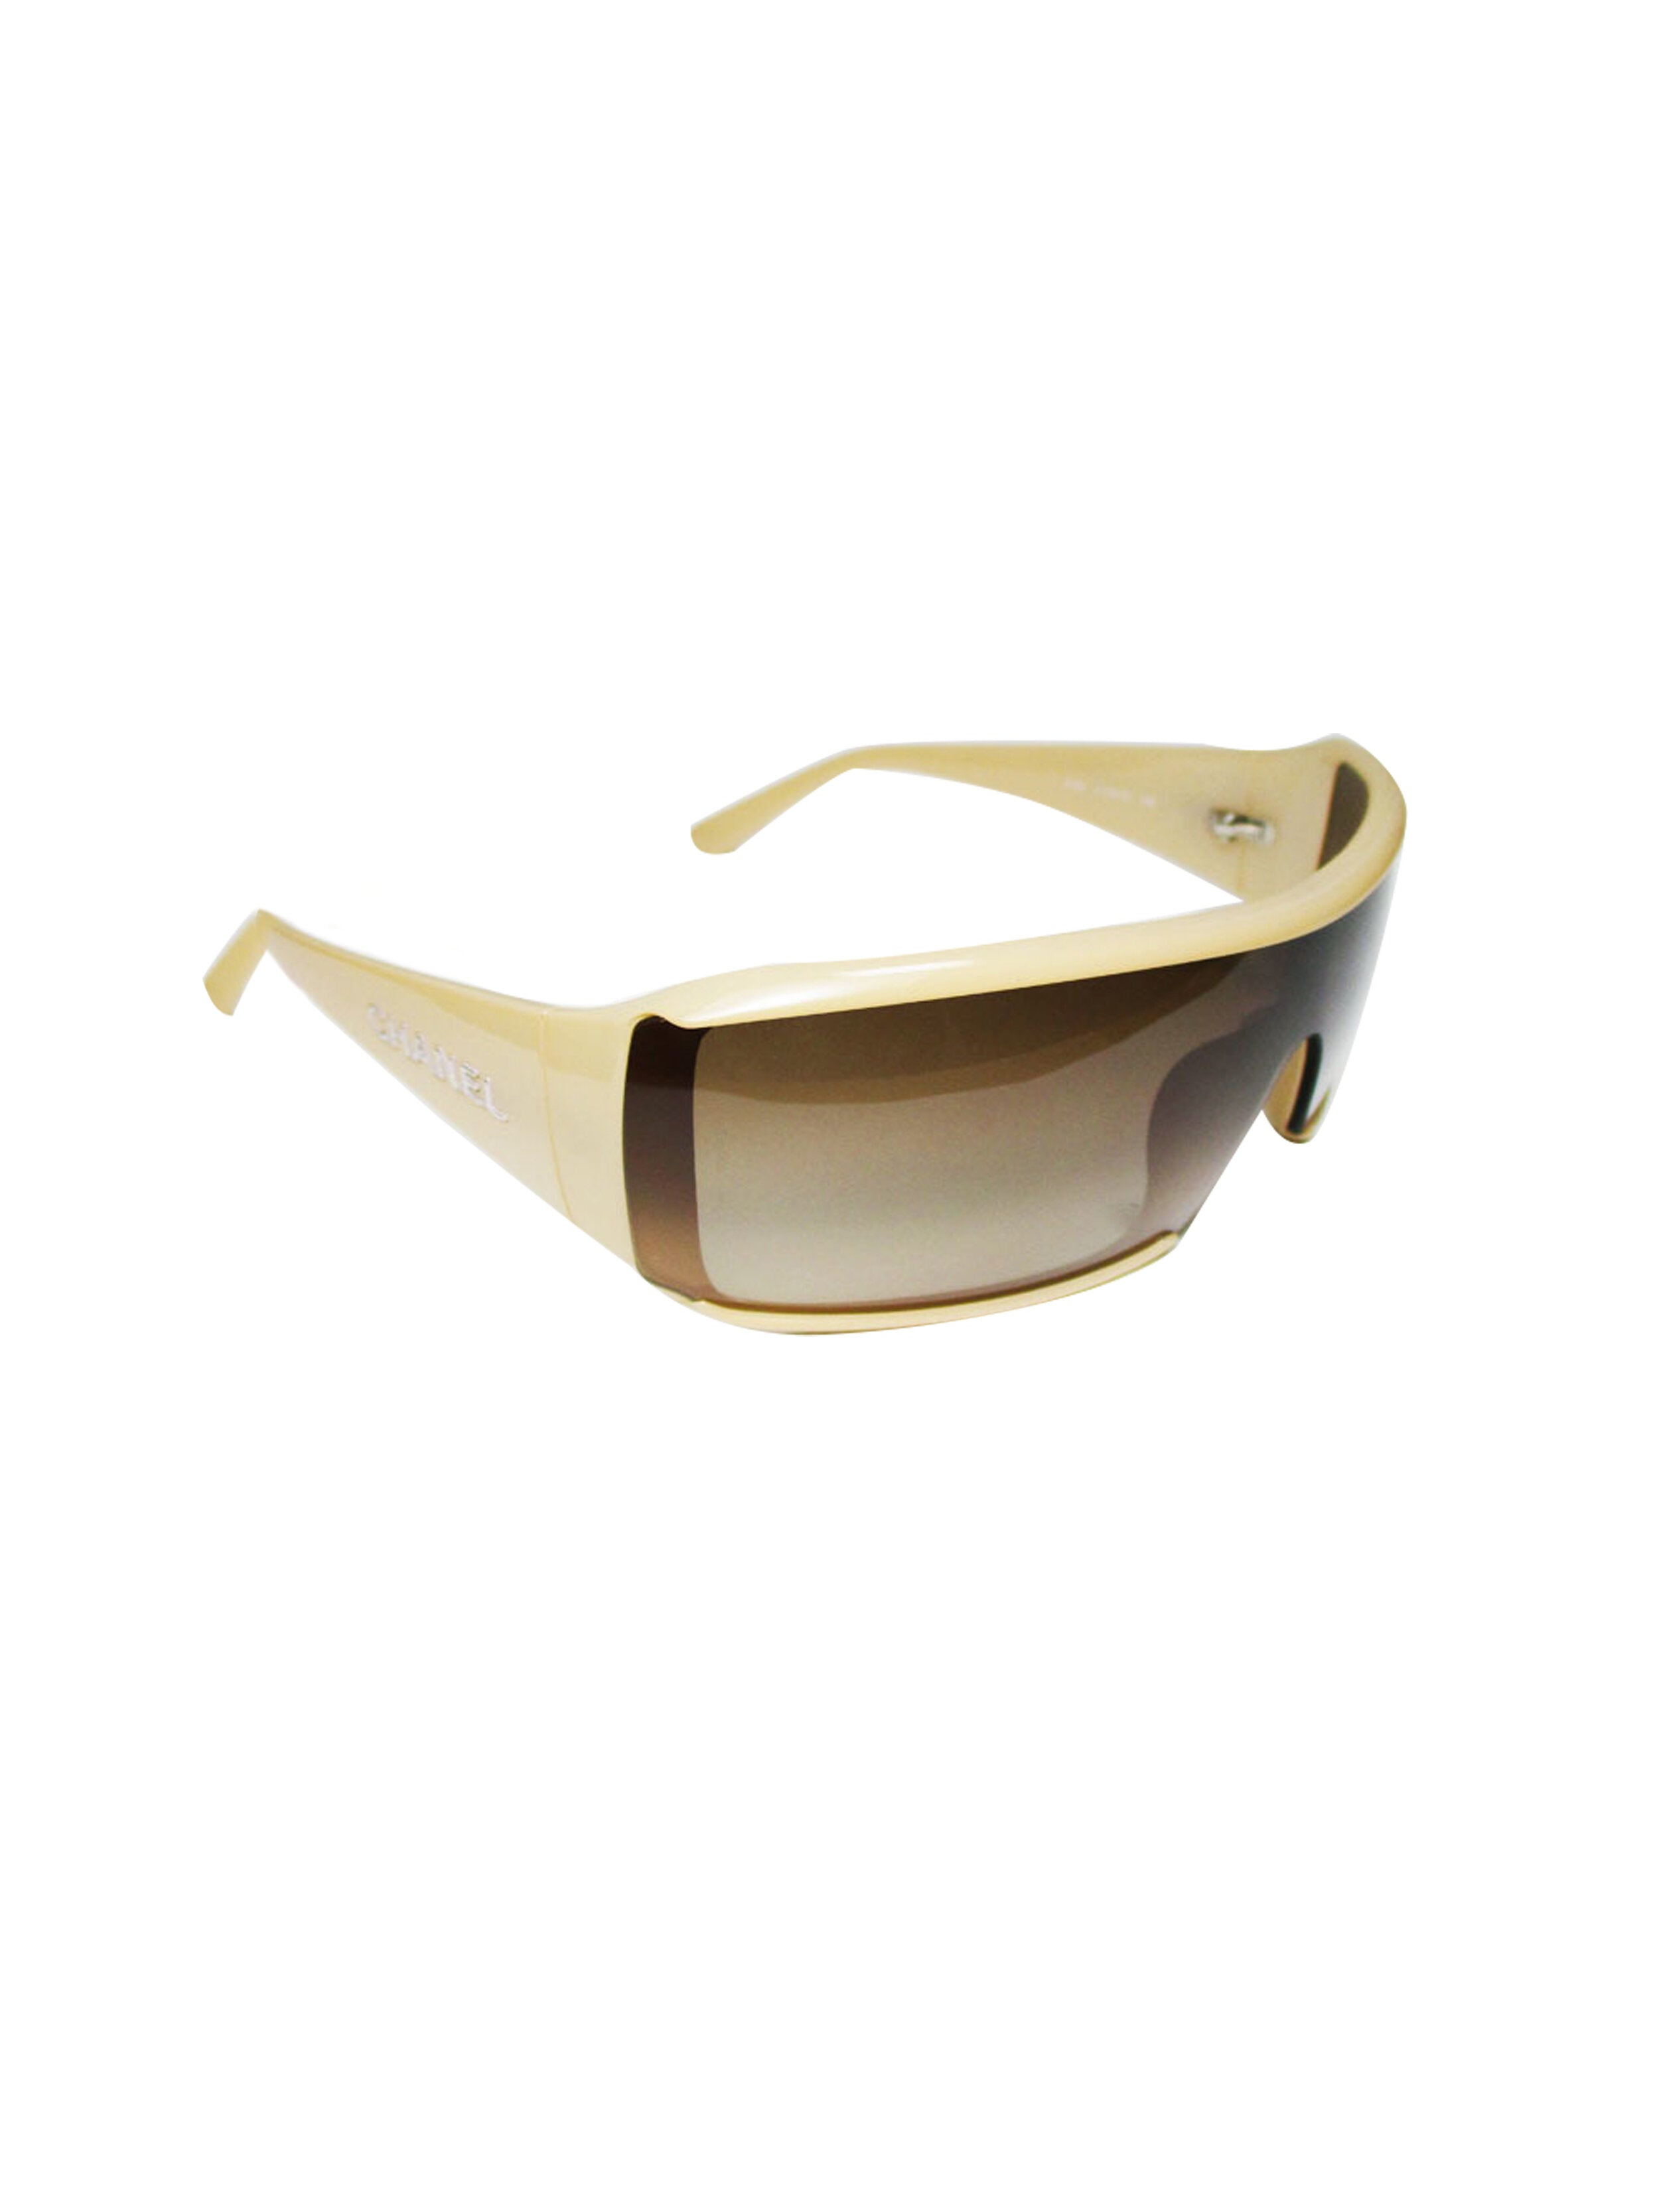 shield chanel sunglasses